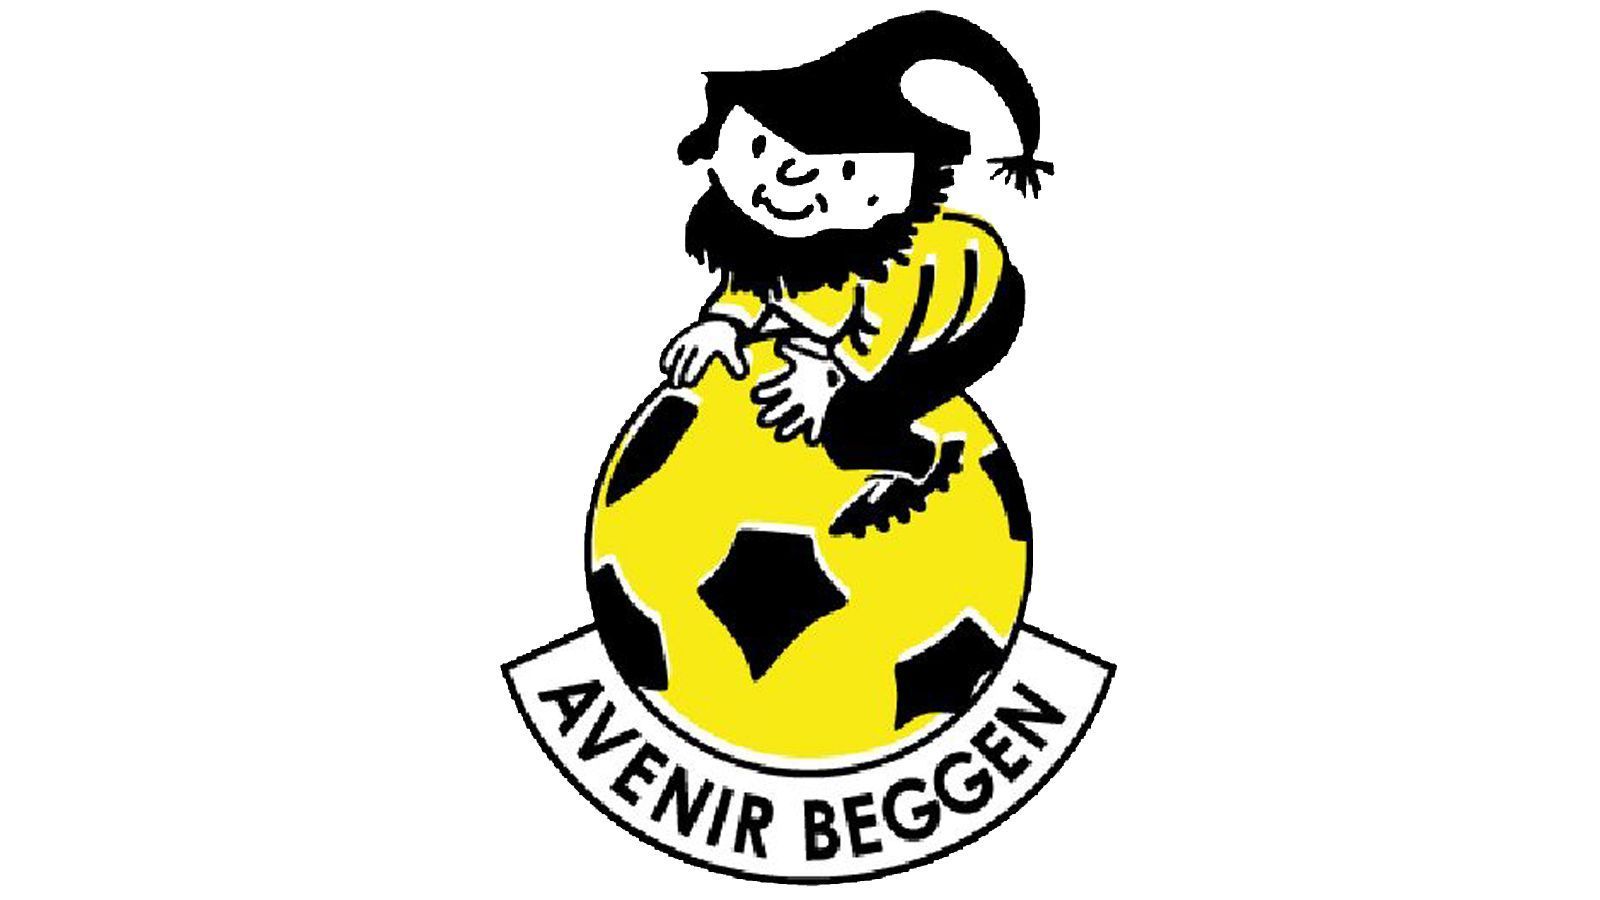 
                <strong>Die hässlichsten Vereinswappen der Welt </strong><br>
                Klub: Avenir BeggenLand: Luxemburg
              